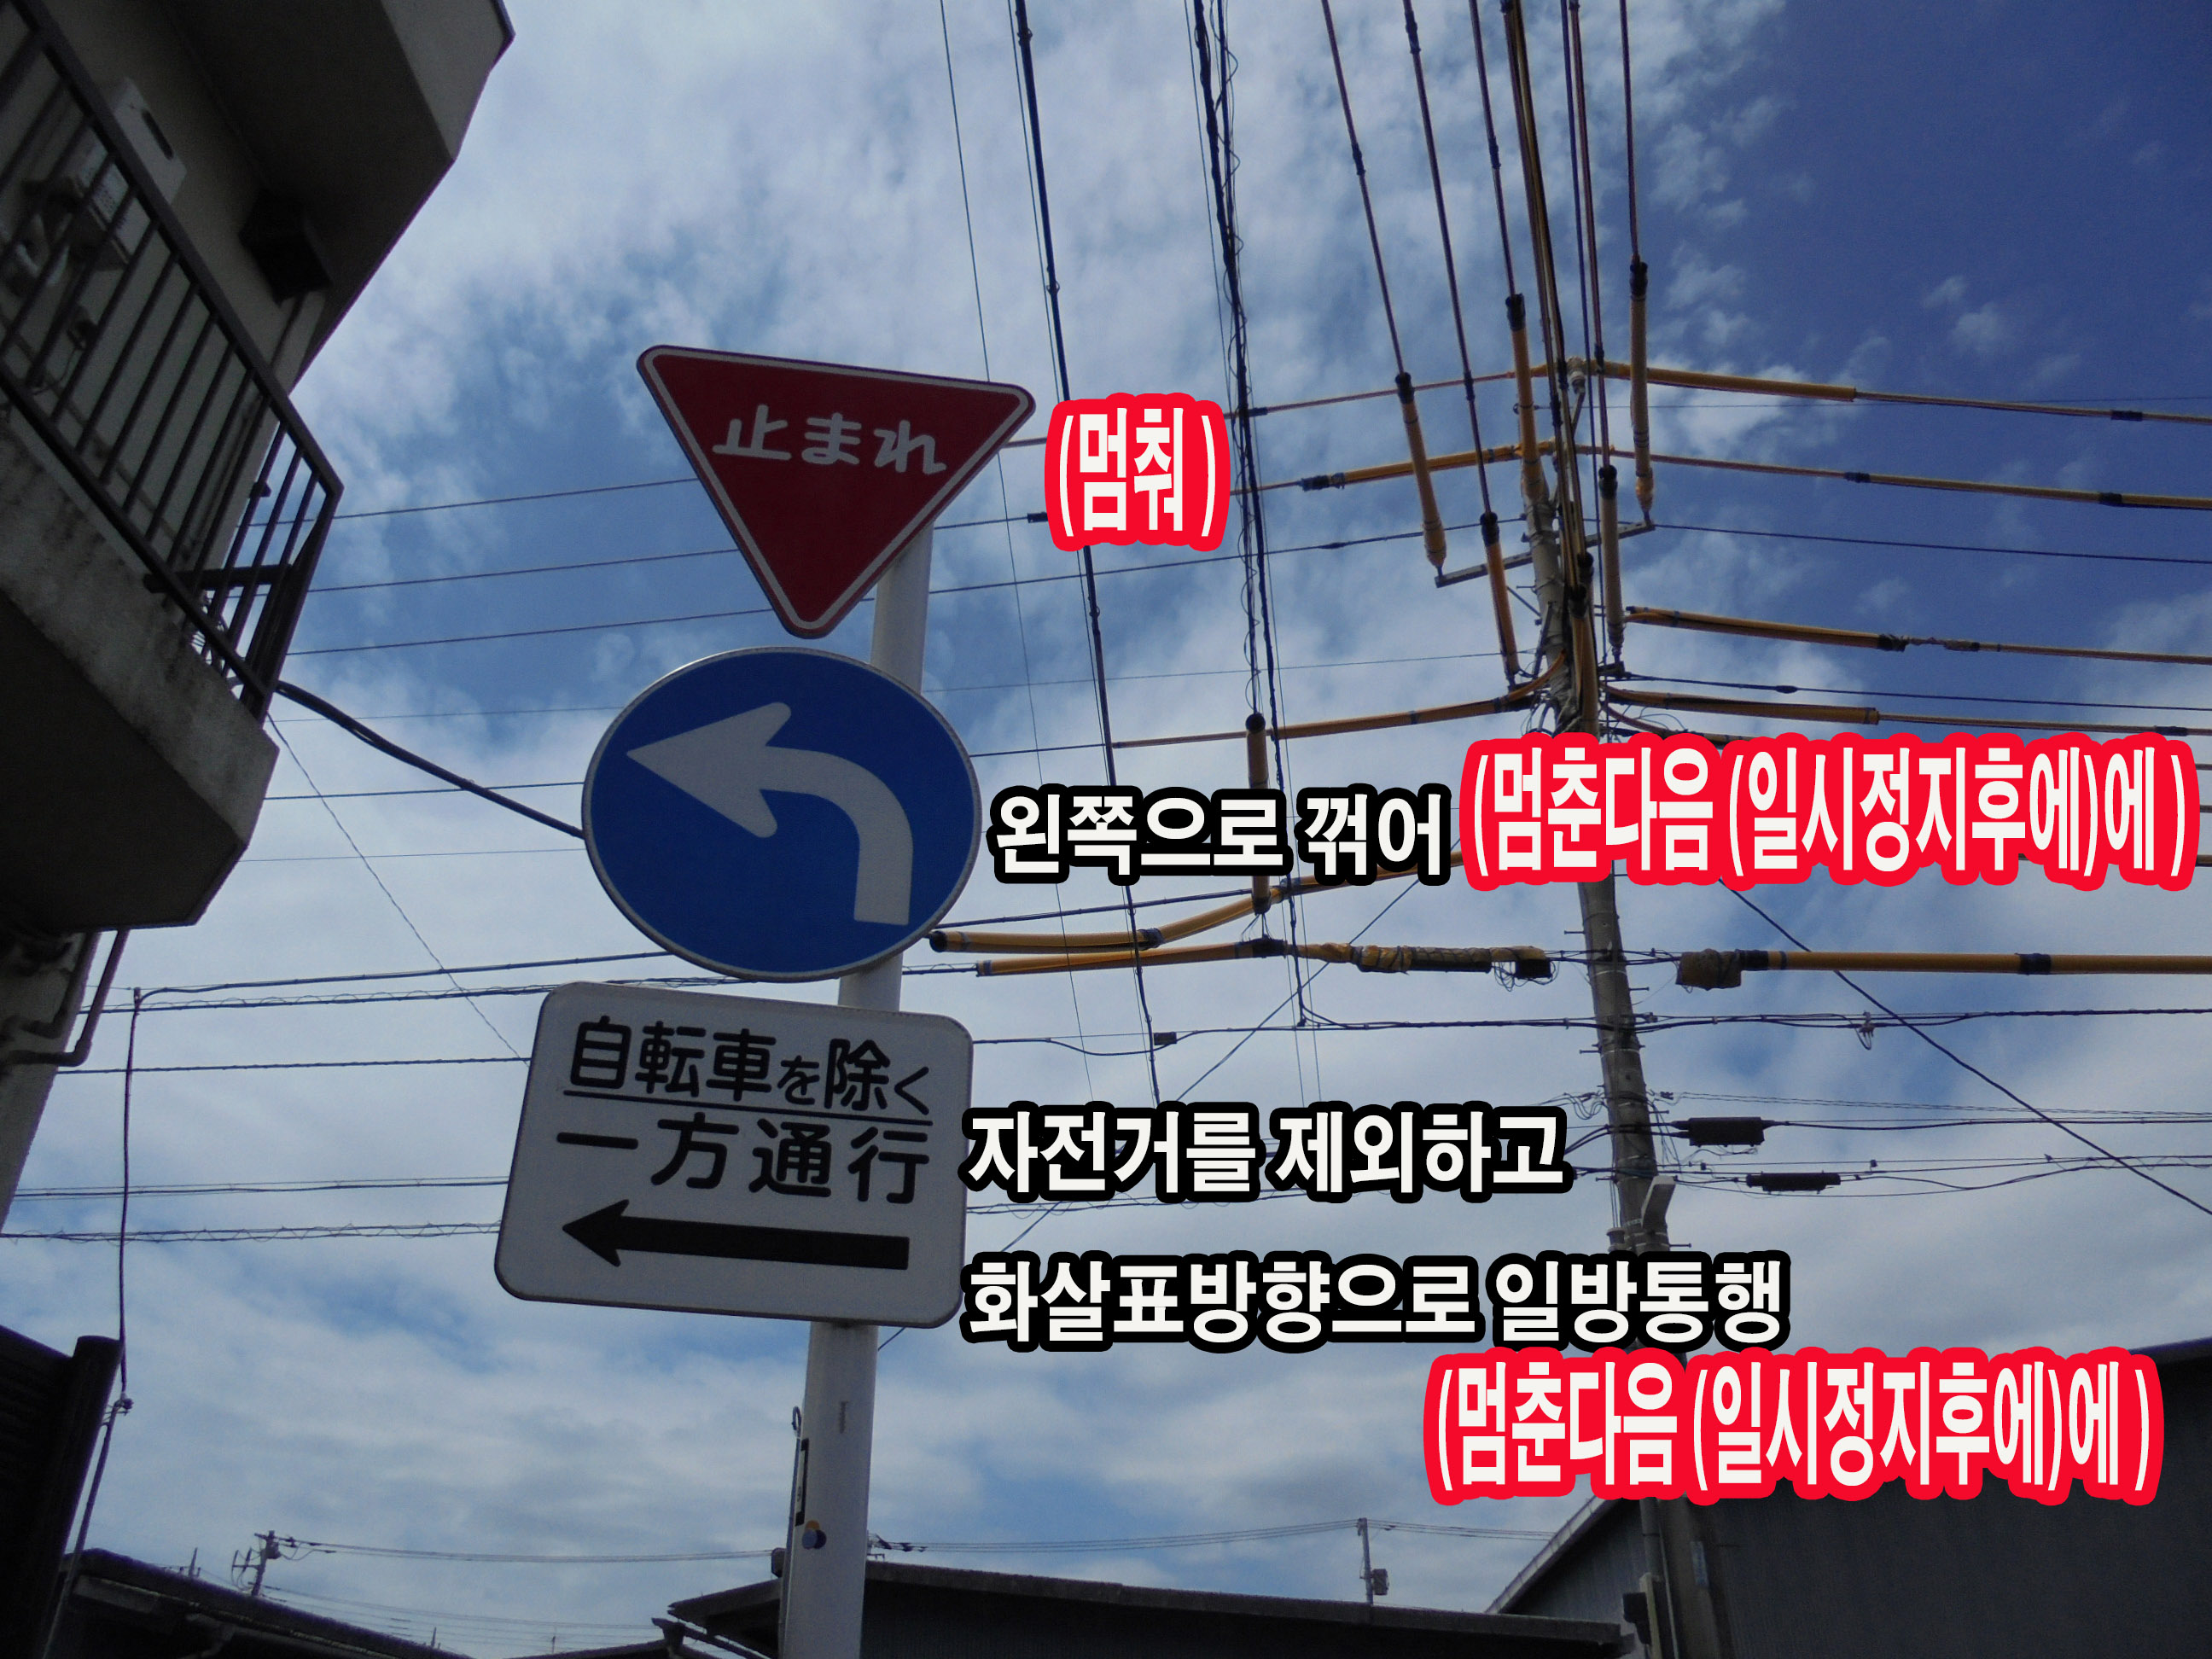 일본에서 운전하기 일시정지 표지/ 현지단속당하는 렌트카관광객 끊이질 않아